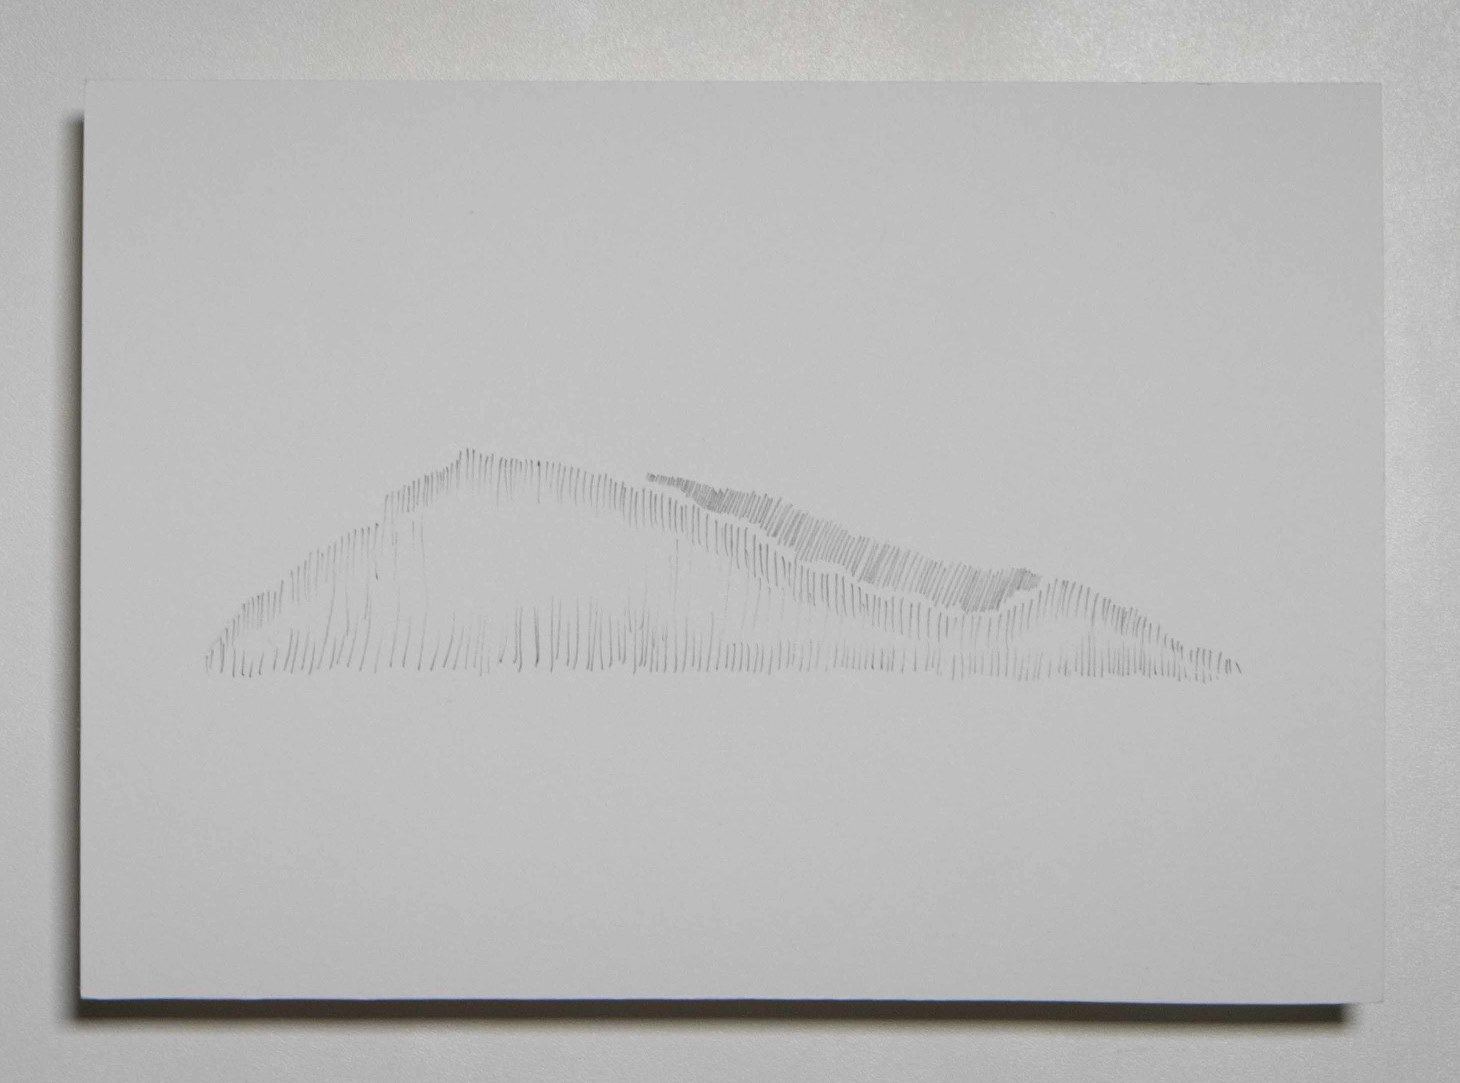 Série Catálogo de paisagens da janela do meu quarto, Anna Moraes, 2020. Desenho, caneta sobre papel 300g, 20x15cm. 